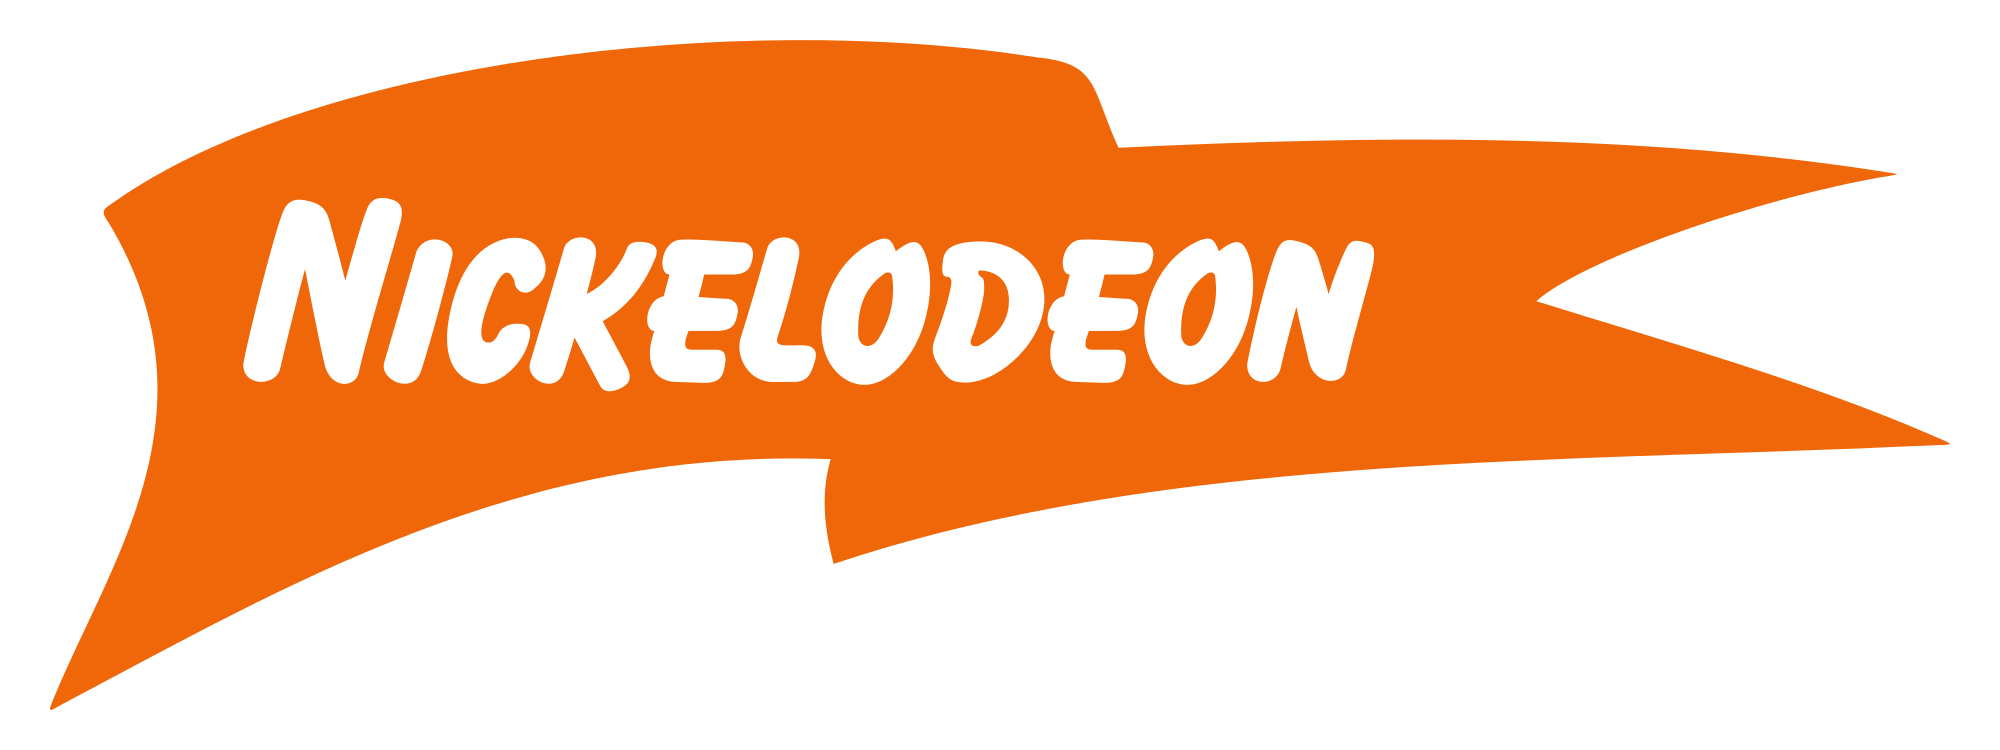 Nickelodeon Leaf Logo - Nickelodeon Leaf Logo